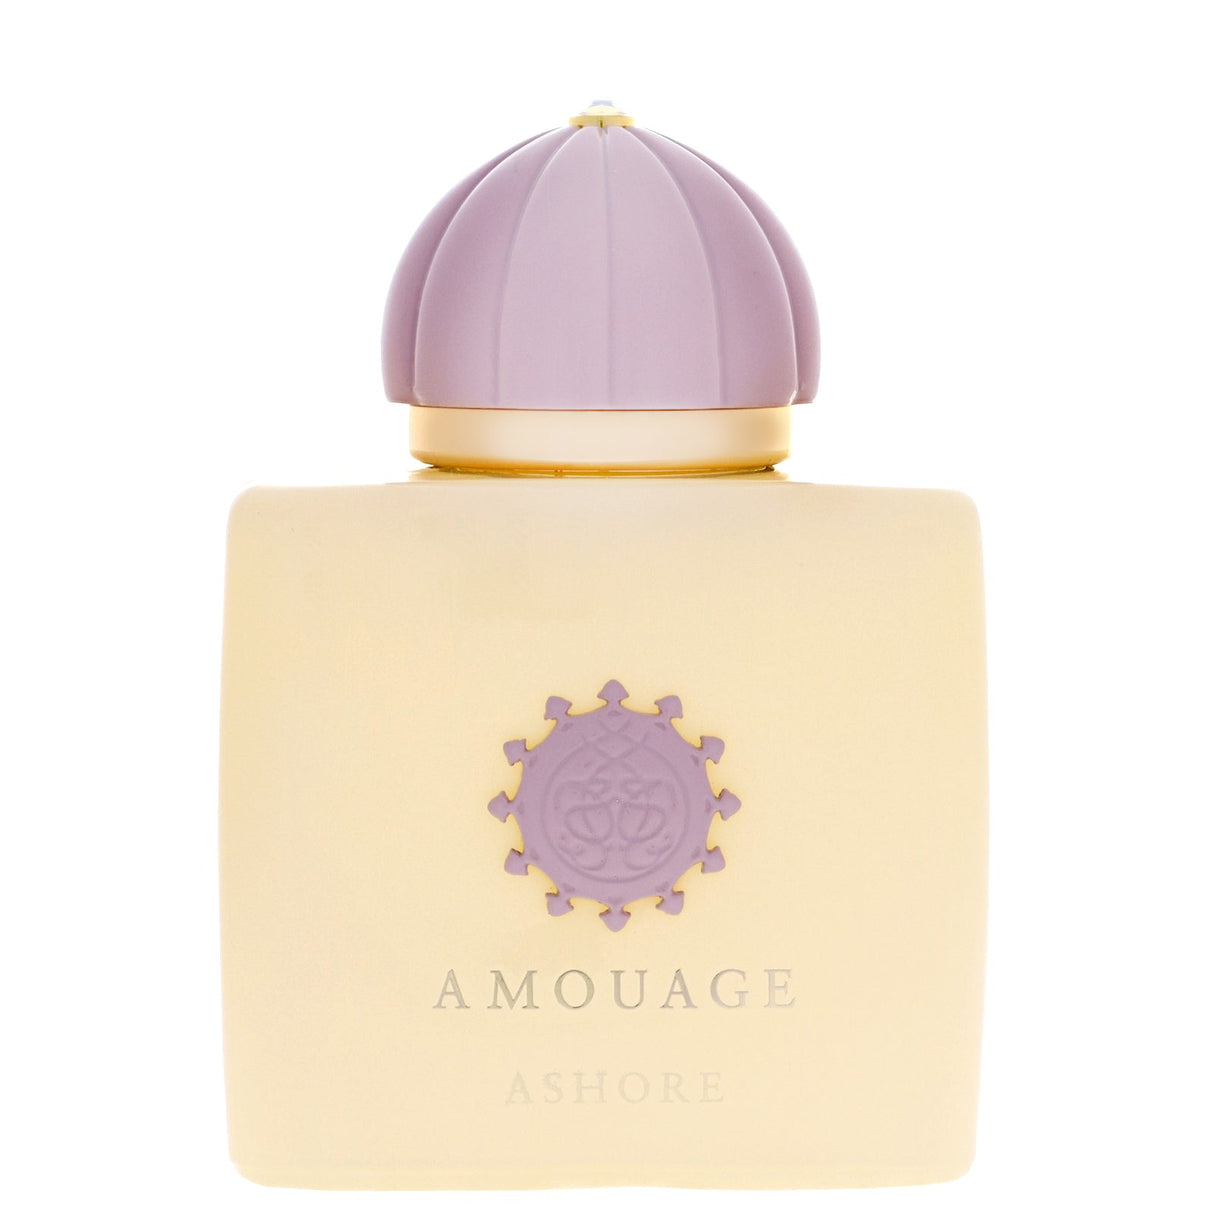 Amouage Ashore Eau De Parfum